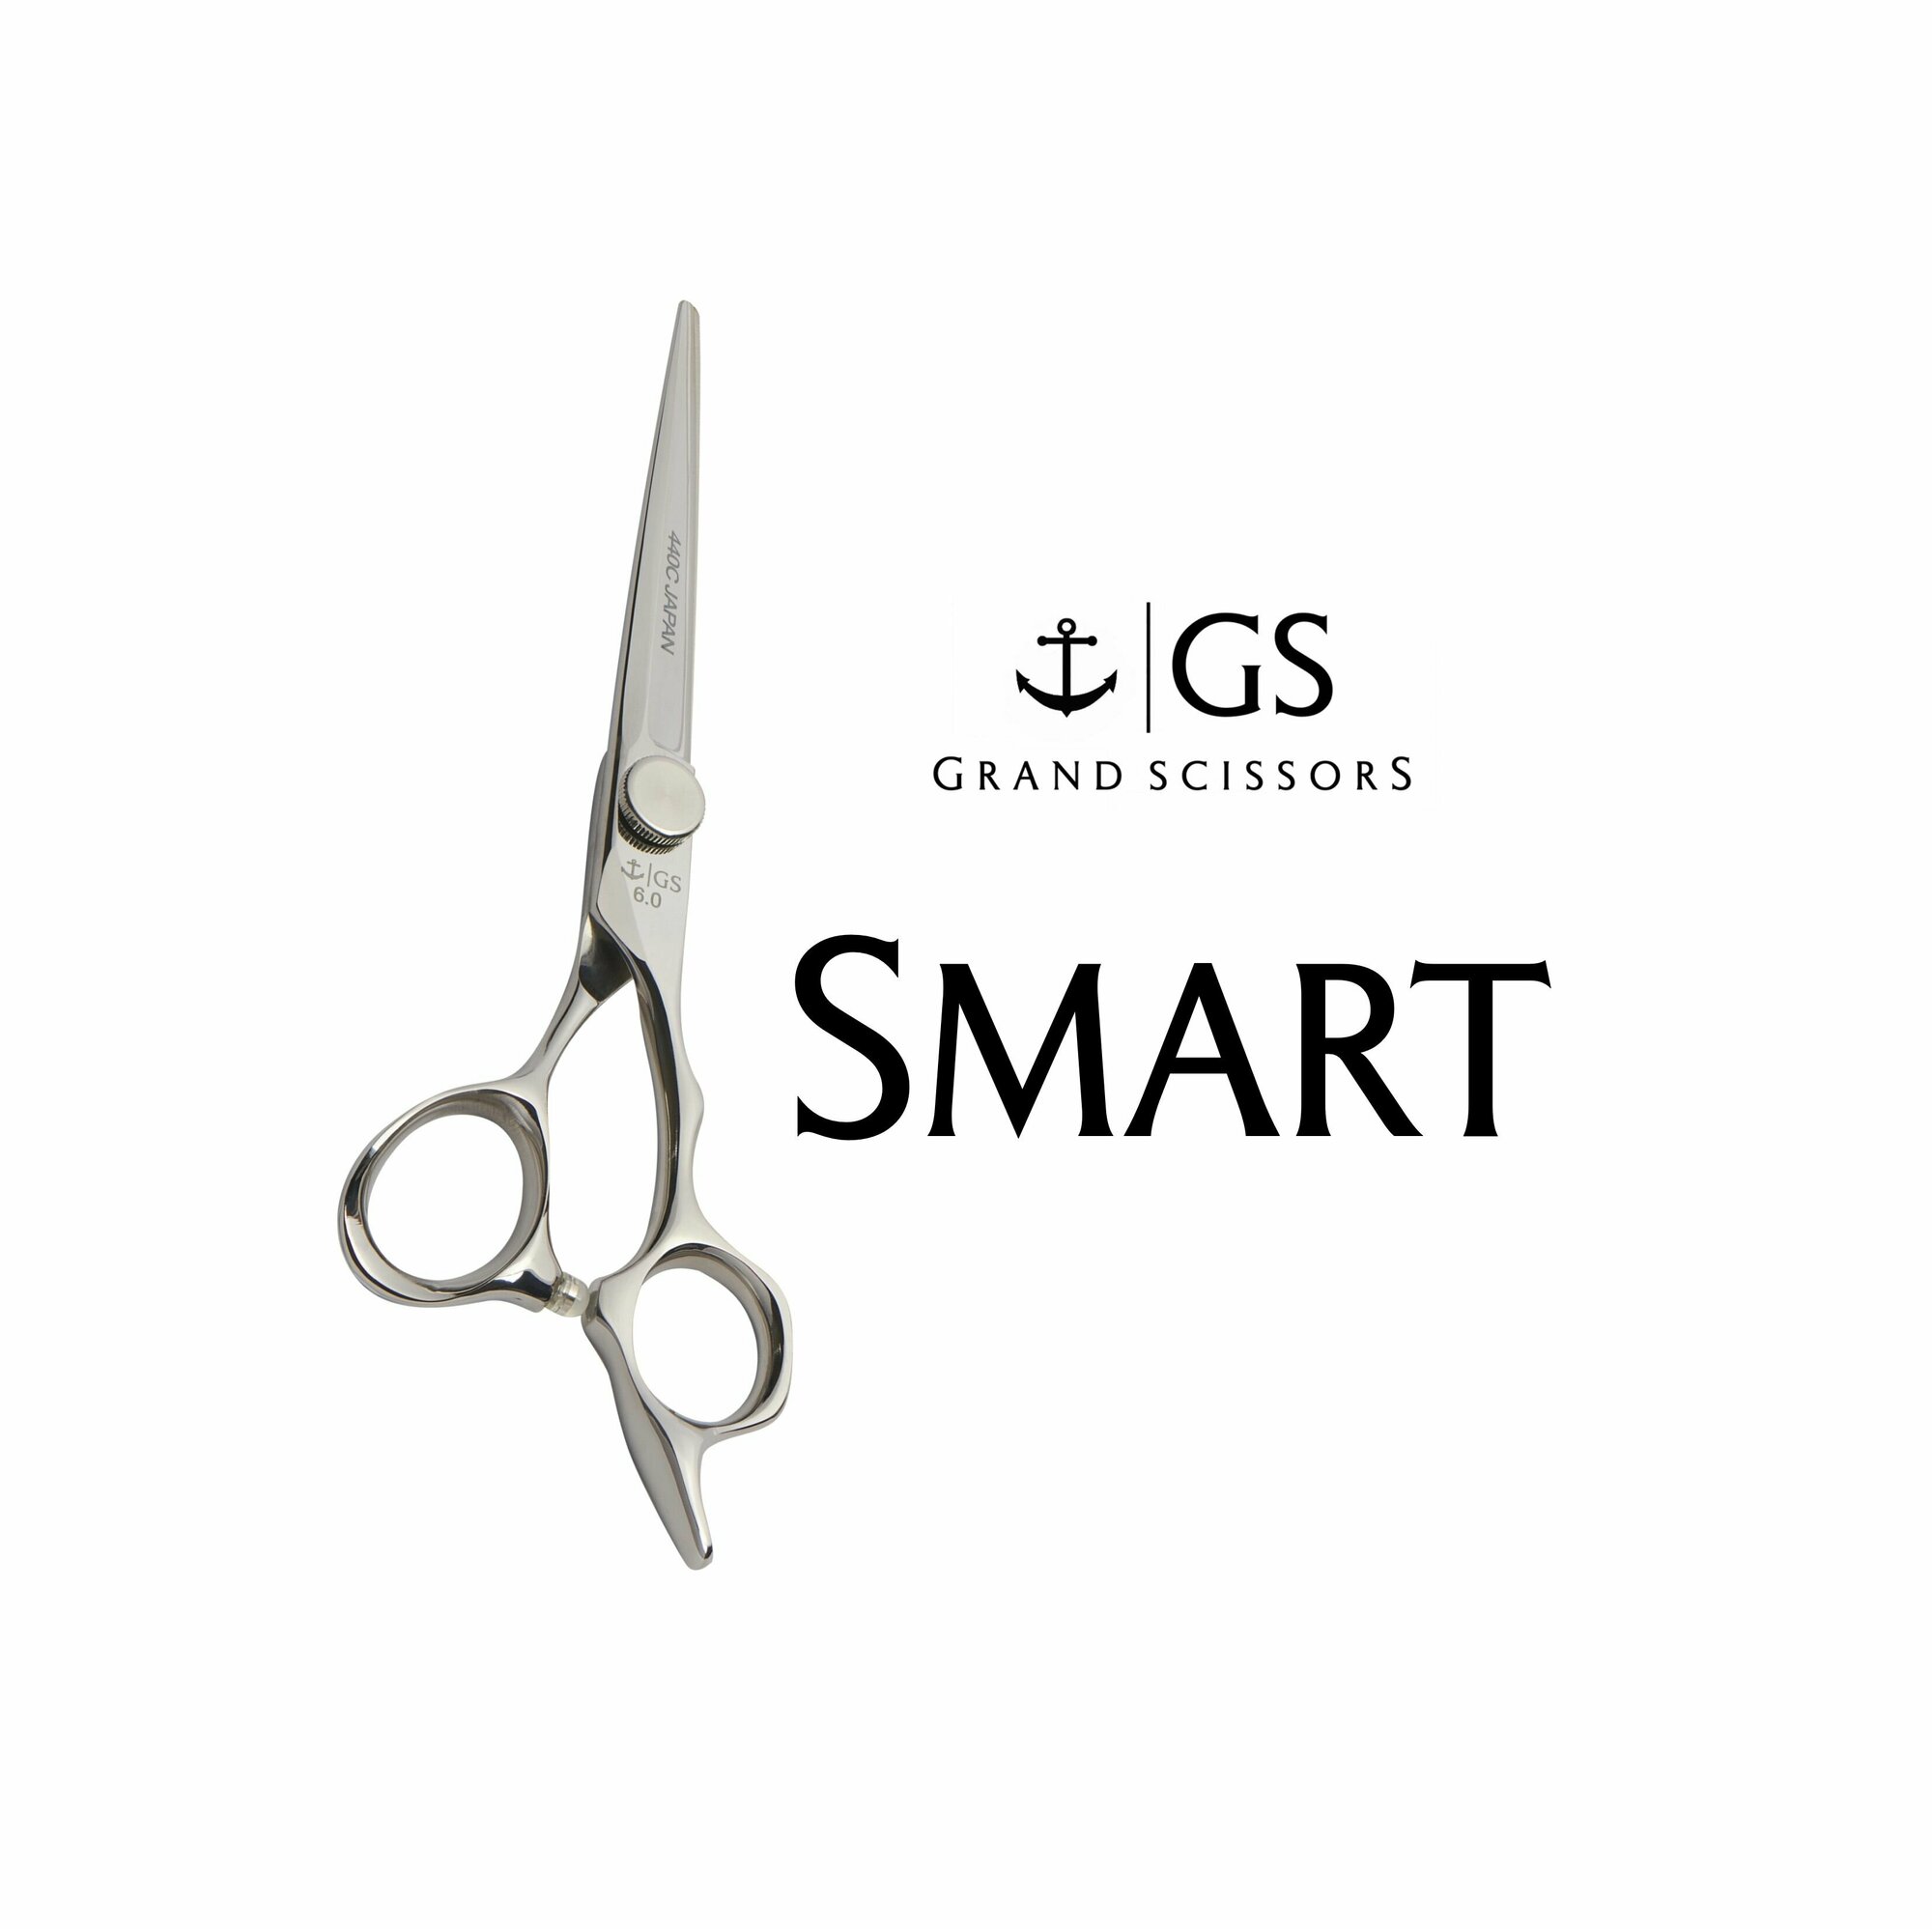 Профессиональные парикмахерские ножницы 7.0 из японской стали GS Smart